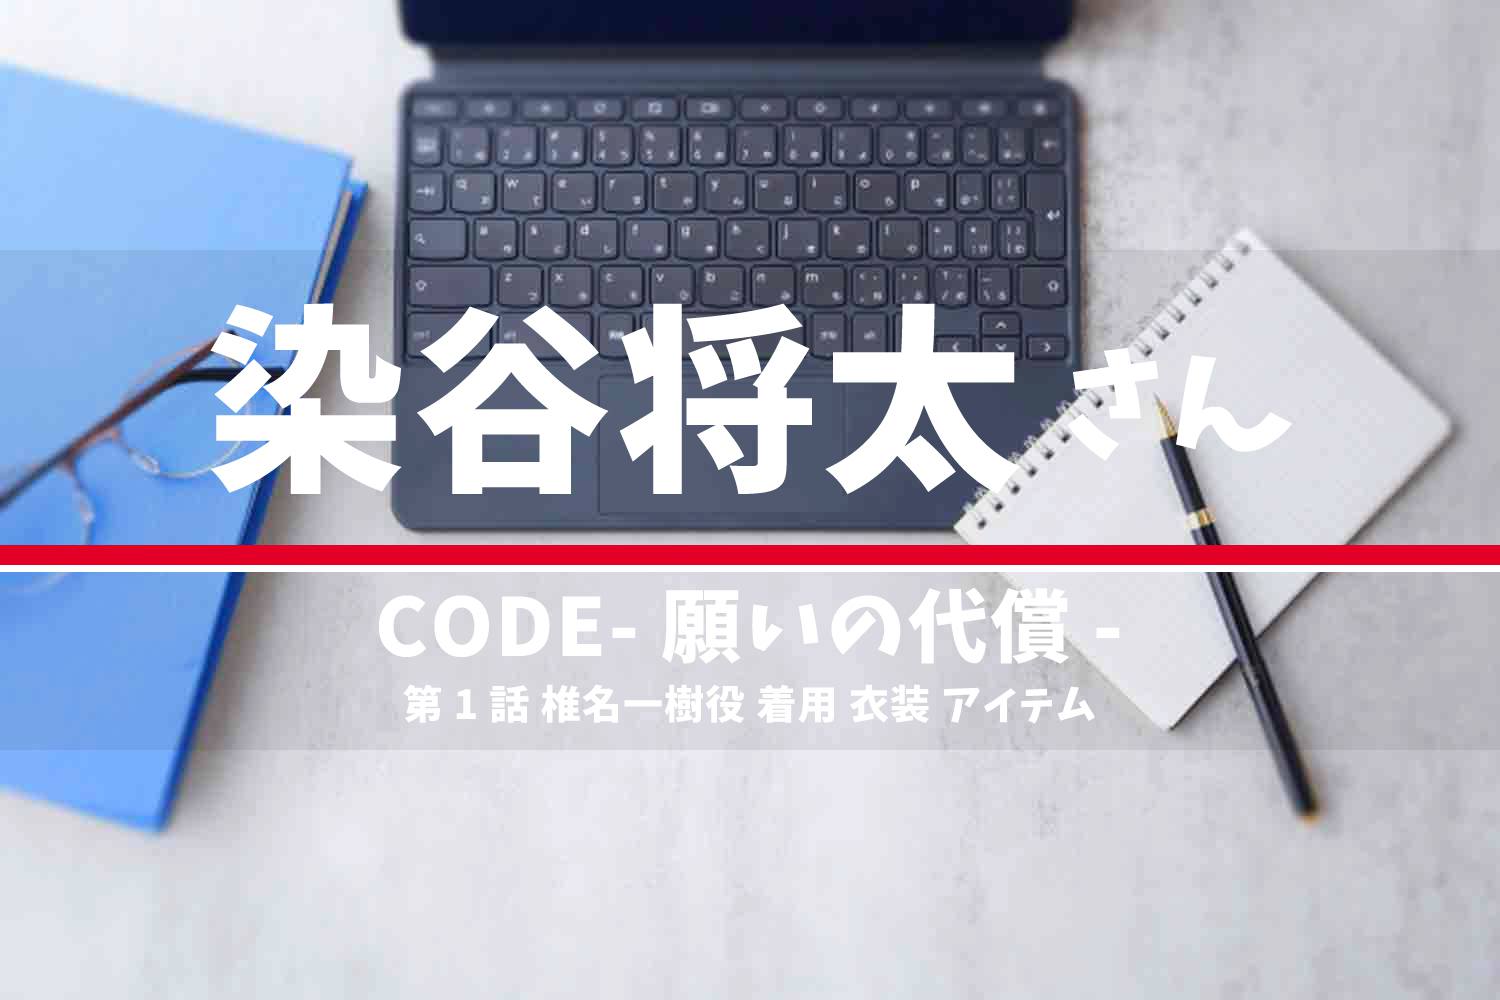 CODE-願いの代償- 染谷将太さん テレビドラマ 衣装 2023年7月2日放送